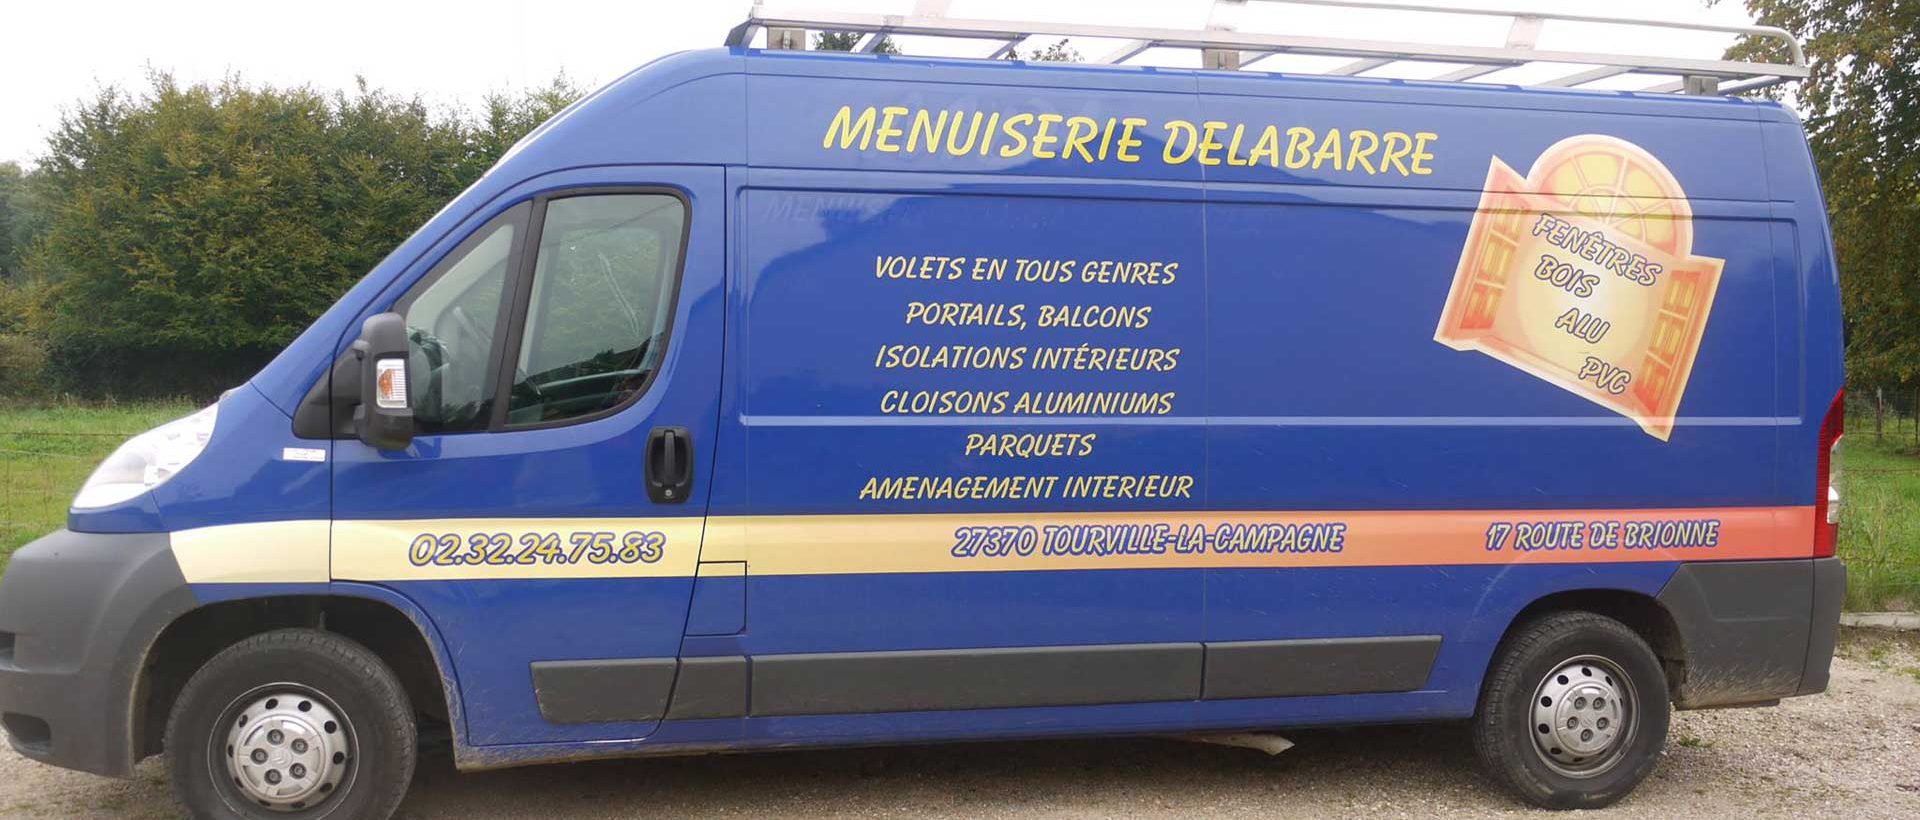 Menuiserie Delabarre